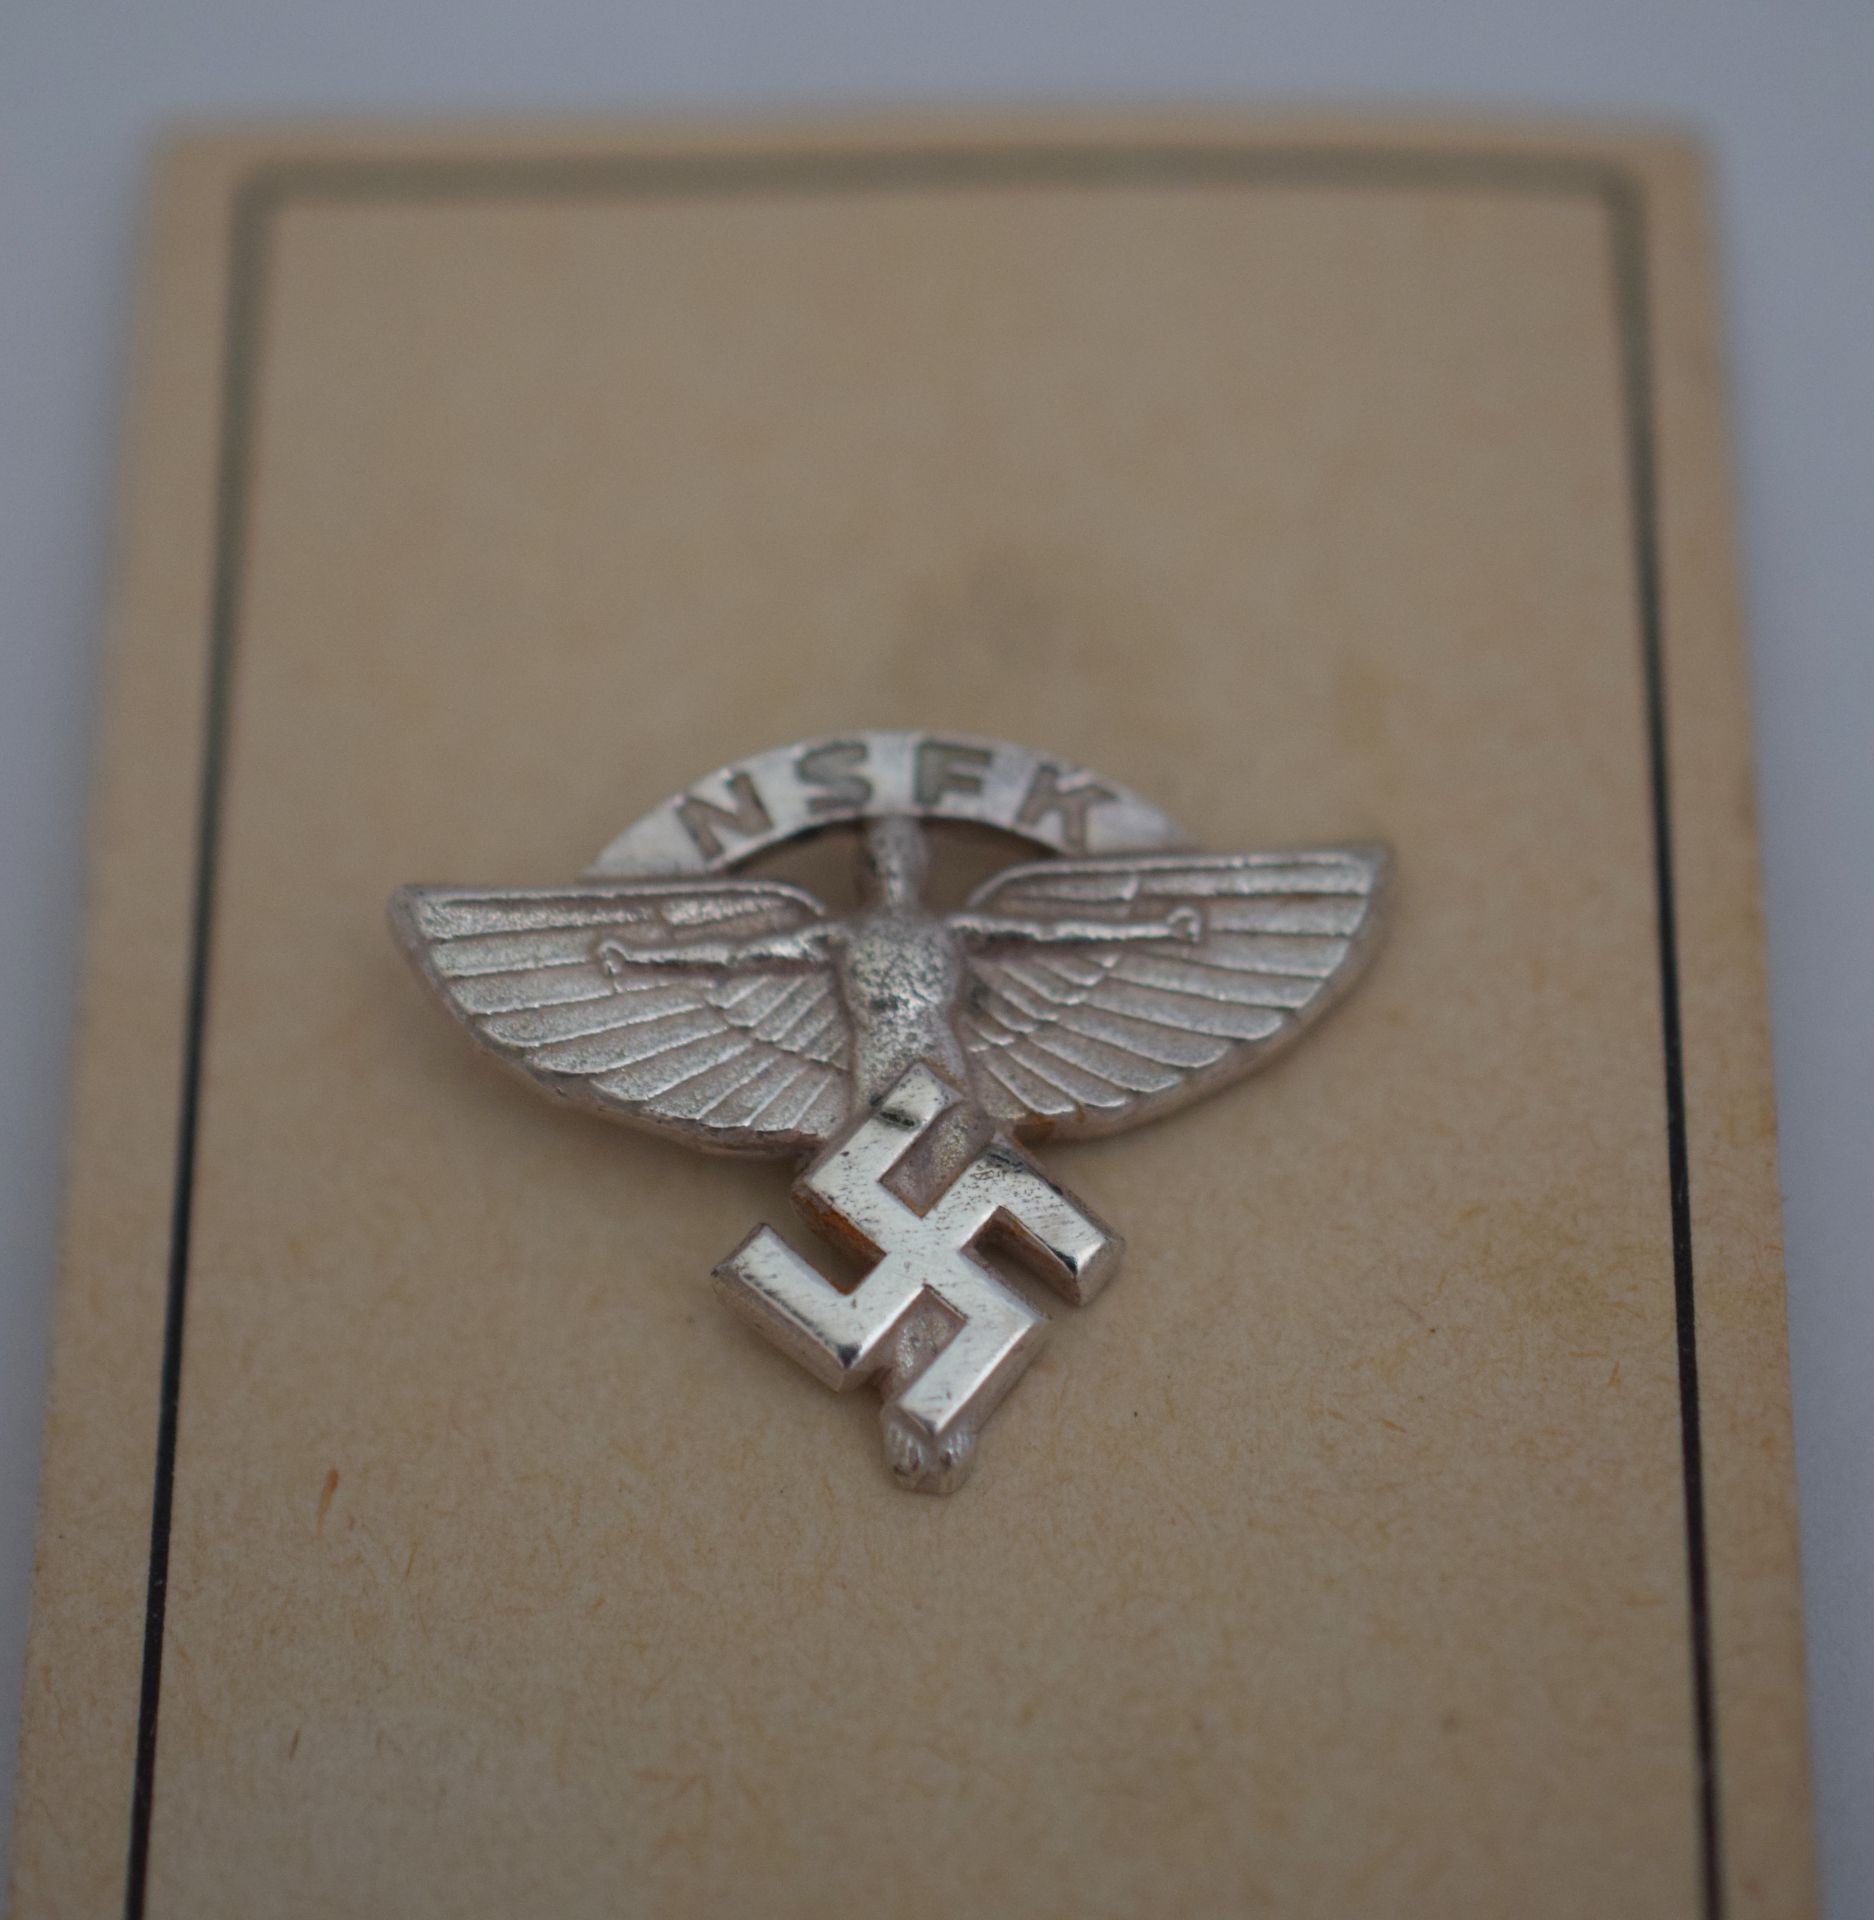 WW2 German NSFK Lapel Badge